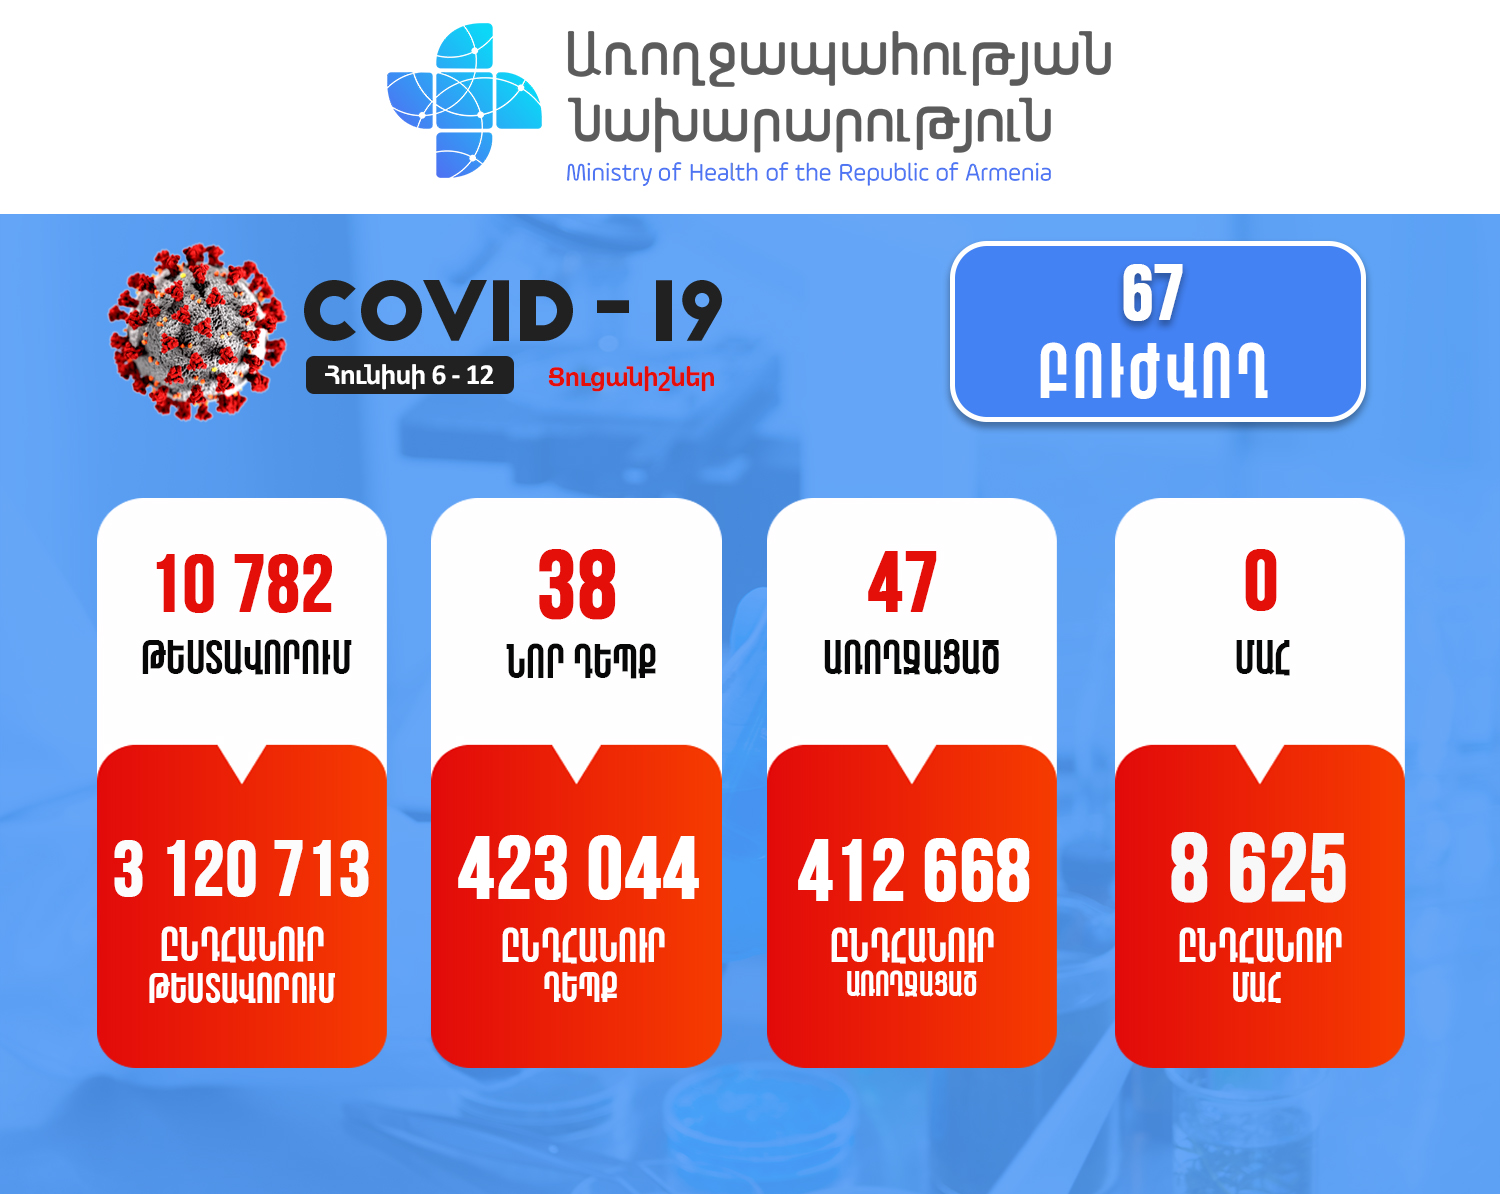 Հայաստանում վերջին մեկ շաբաթում հաստատվել է կորոնավիրուսի 38 նոր դեպք